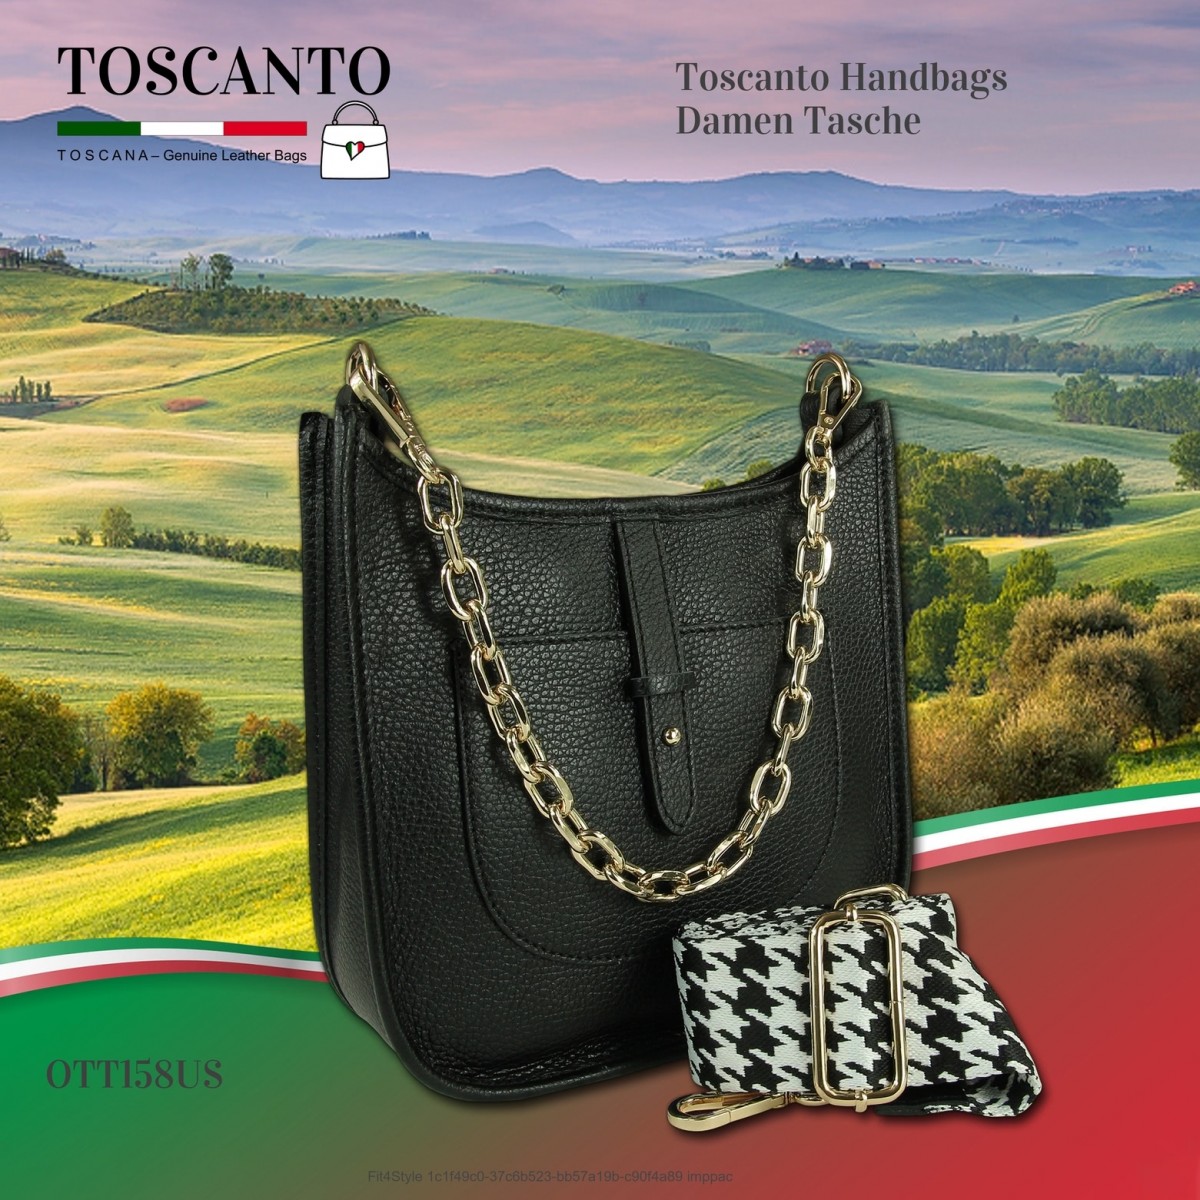 Toscanto Damen Jugend Tasche OTT158US Citytasche Leder Umhängetasche schwarz